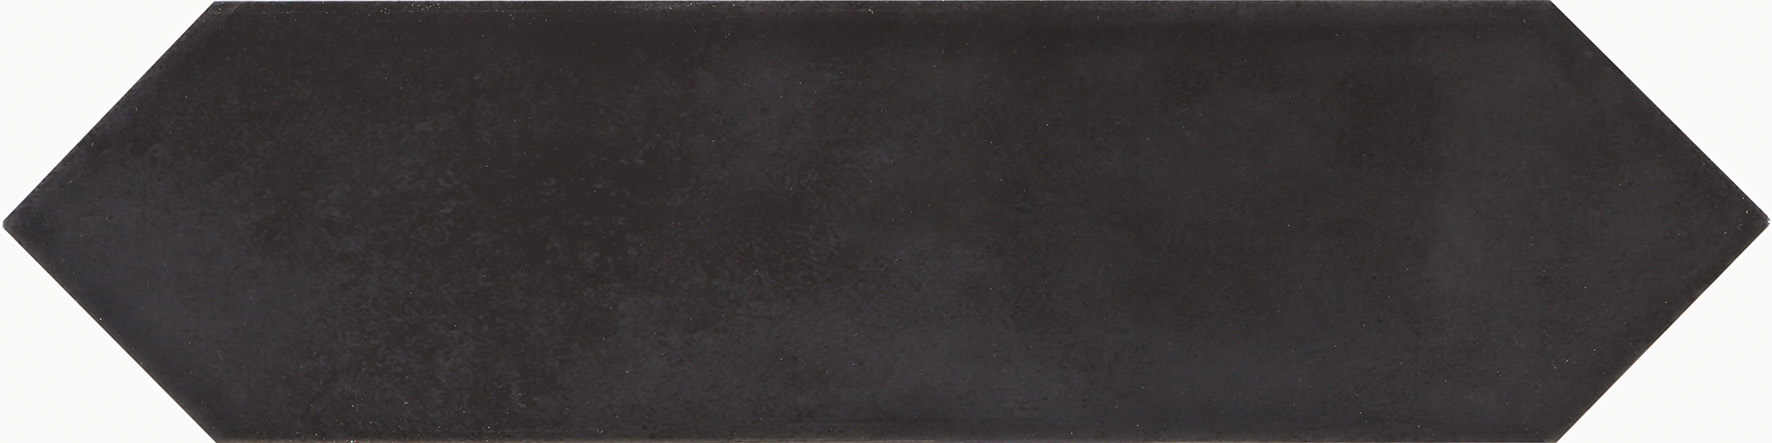 Керамическая плитка Queensbury grafito 7,5x26,5 см